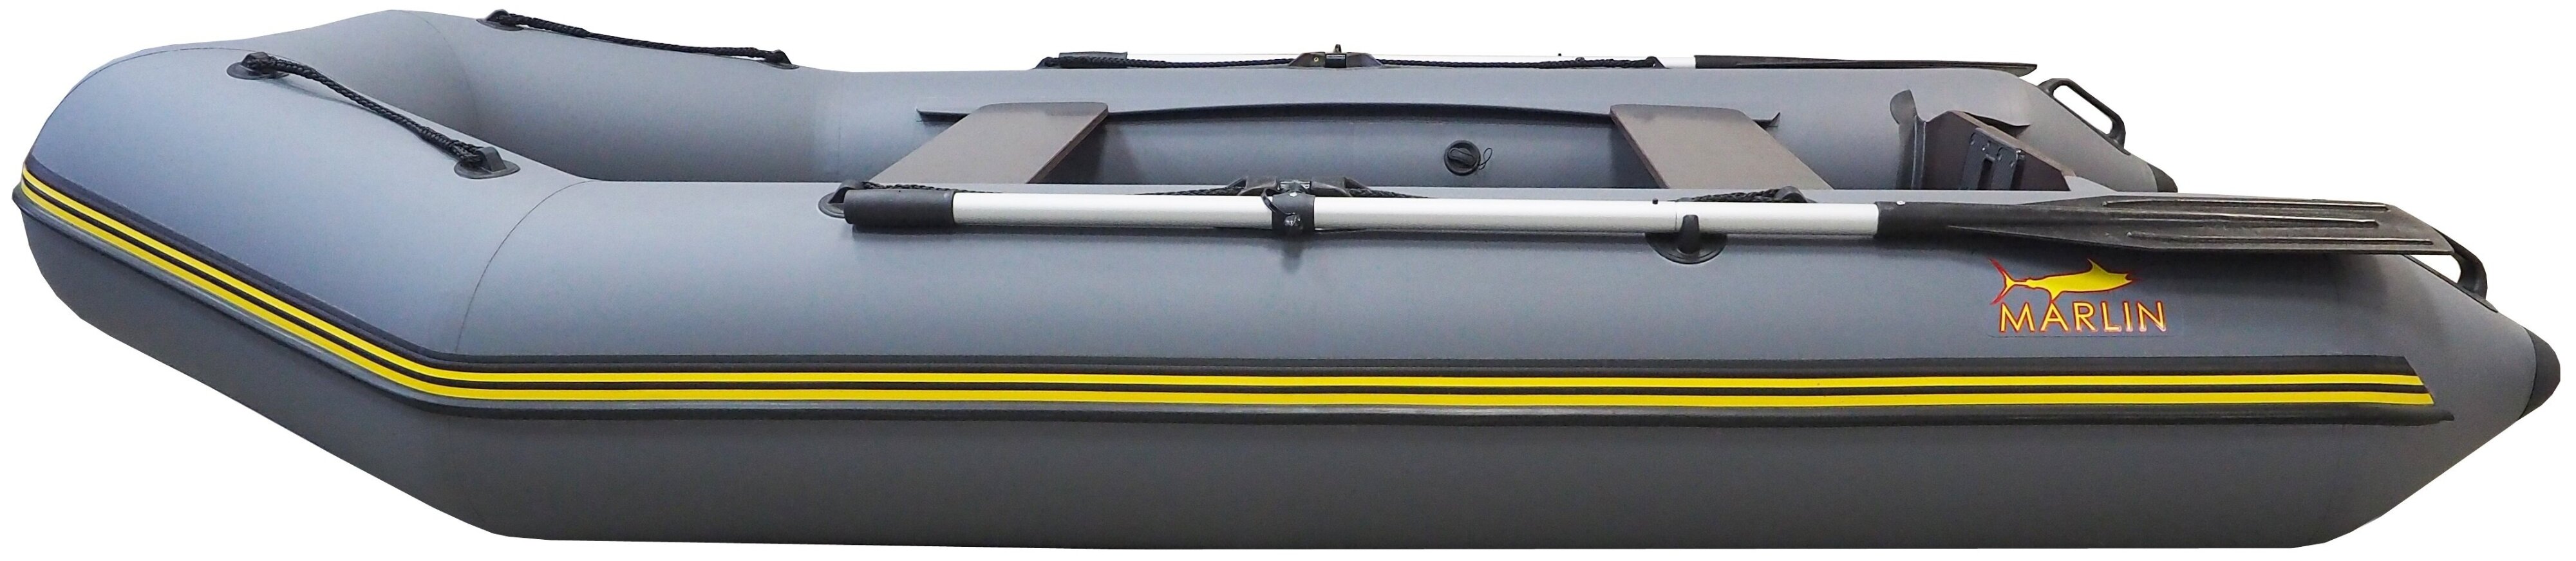 Обзор надувной лодки «marlin 280» | пароходофф: обзоры водной техники и сопутствующих услуг